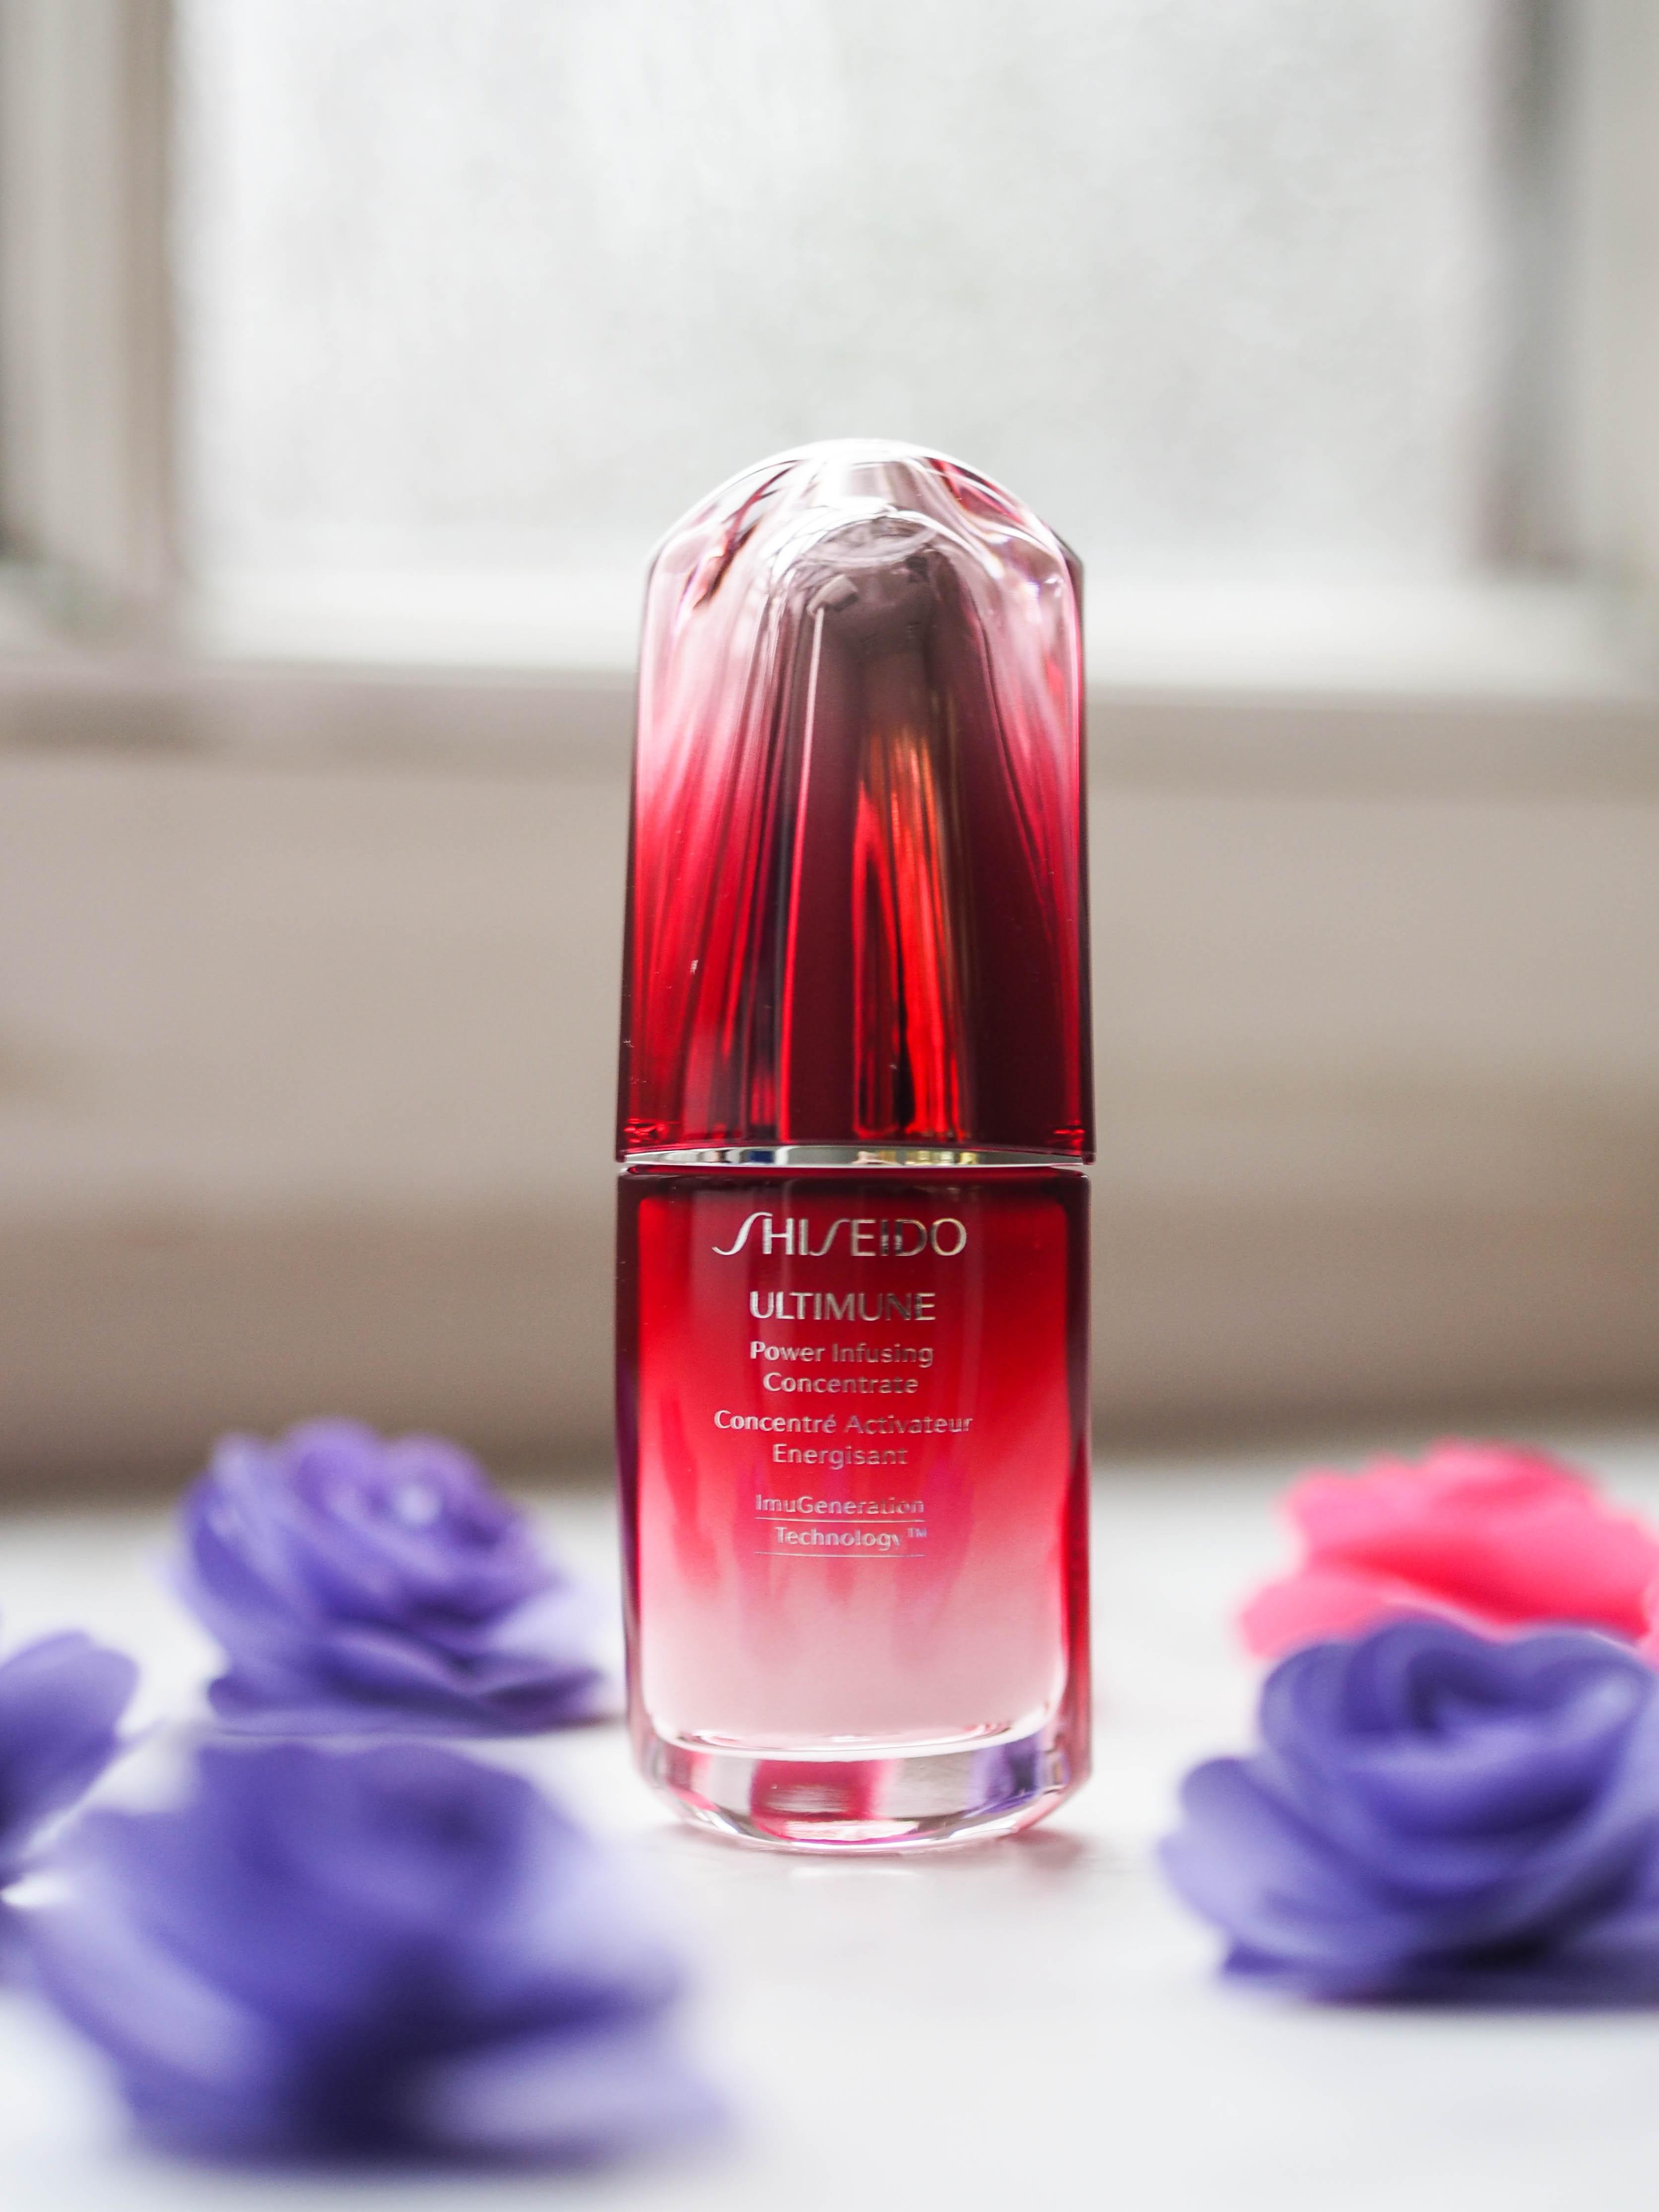 Pflegewunder: 2 Pumpstöße des schützenden Konzentrats Shiseido reichen für die Pflege aus #beautylieblinge #shiseido